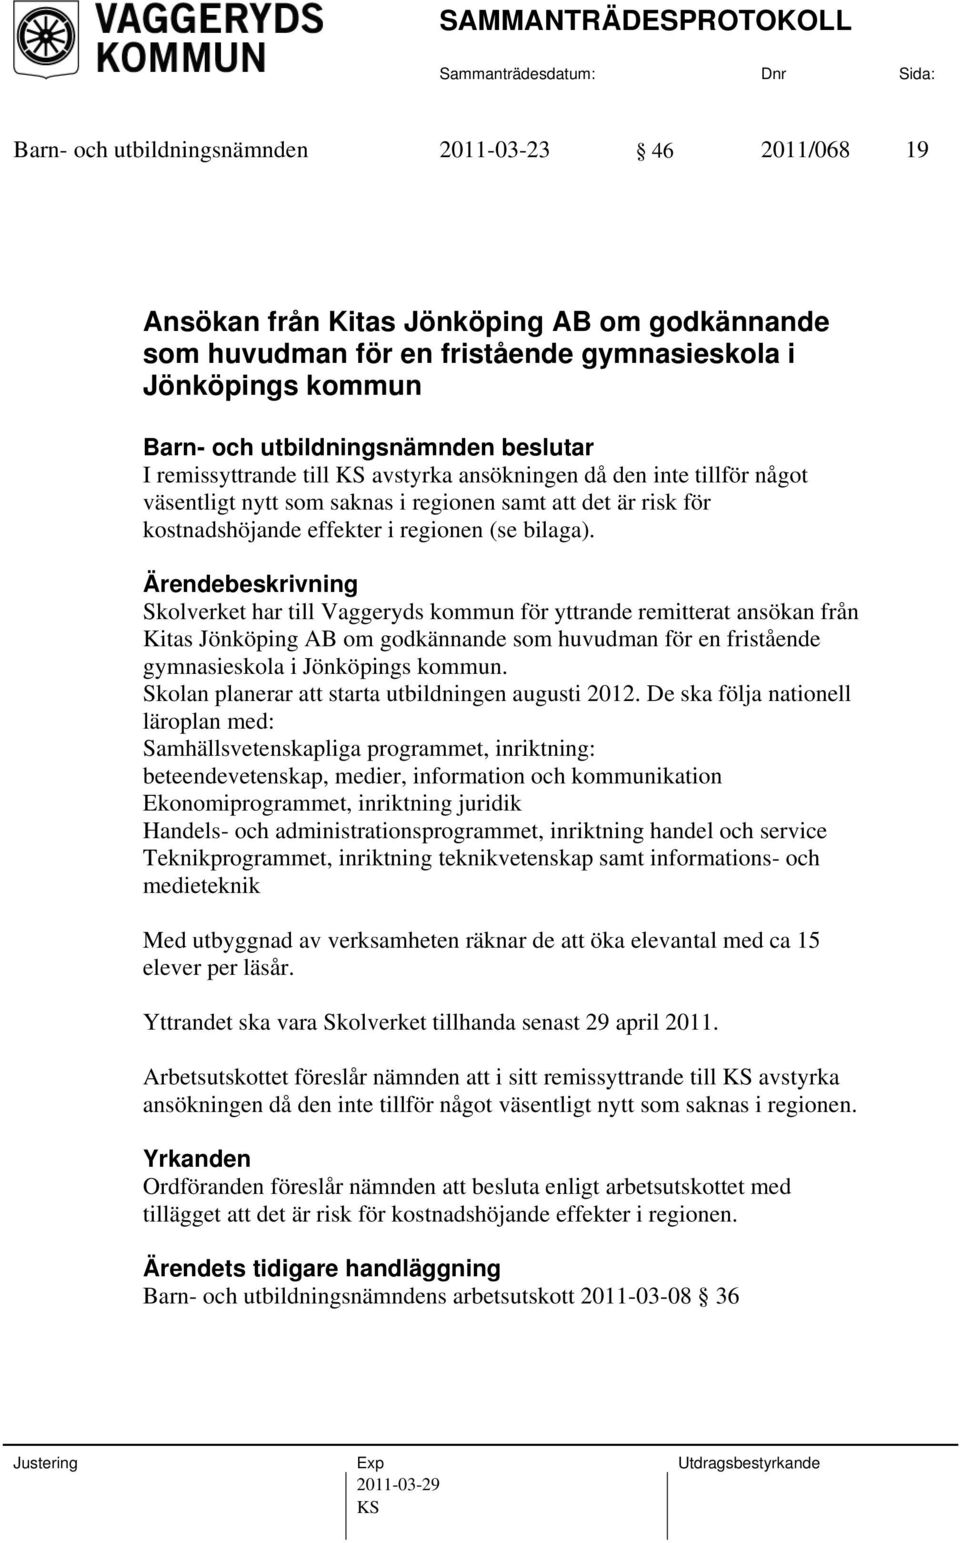 Skolverket har till Vaggeryds kommun för yttrande remitterat ansökan från Kitas Jönköping AB om godkännande som huvudman för en fristående gymnasieskola i Jönköpings kommun.